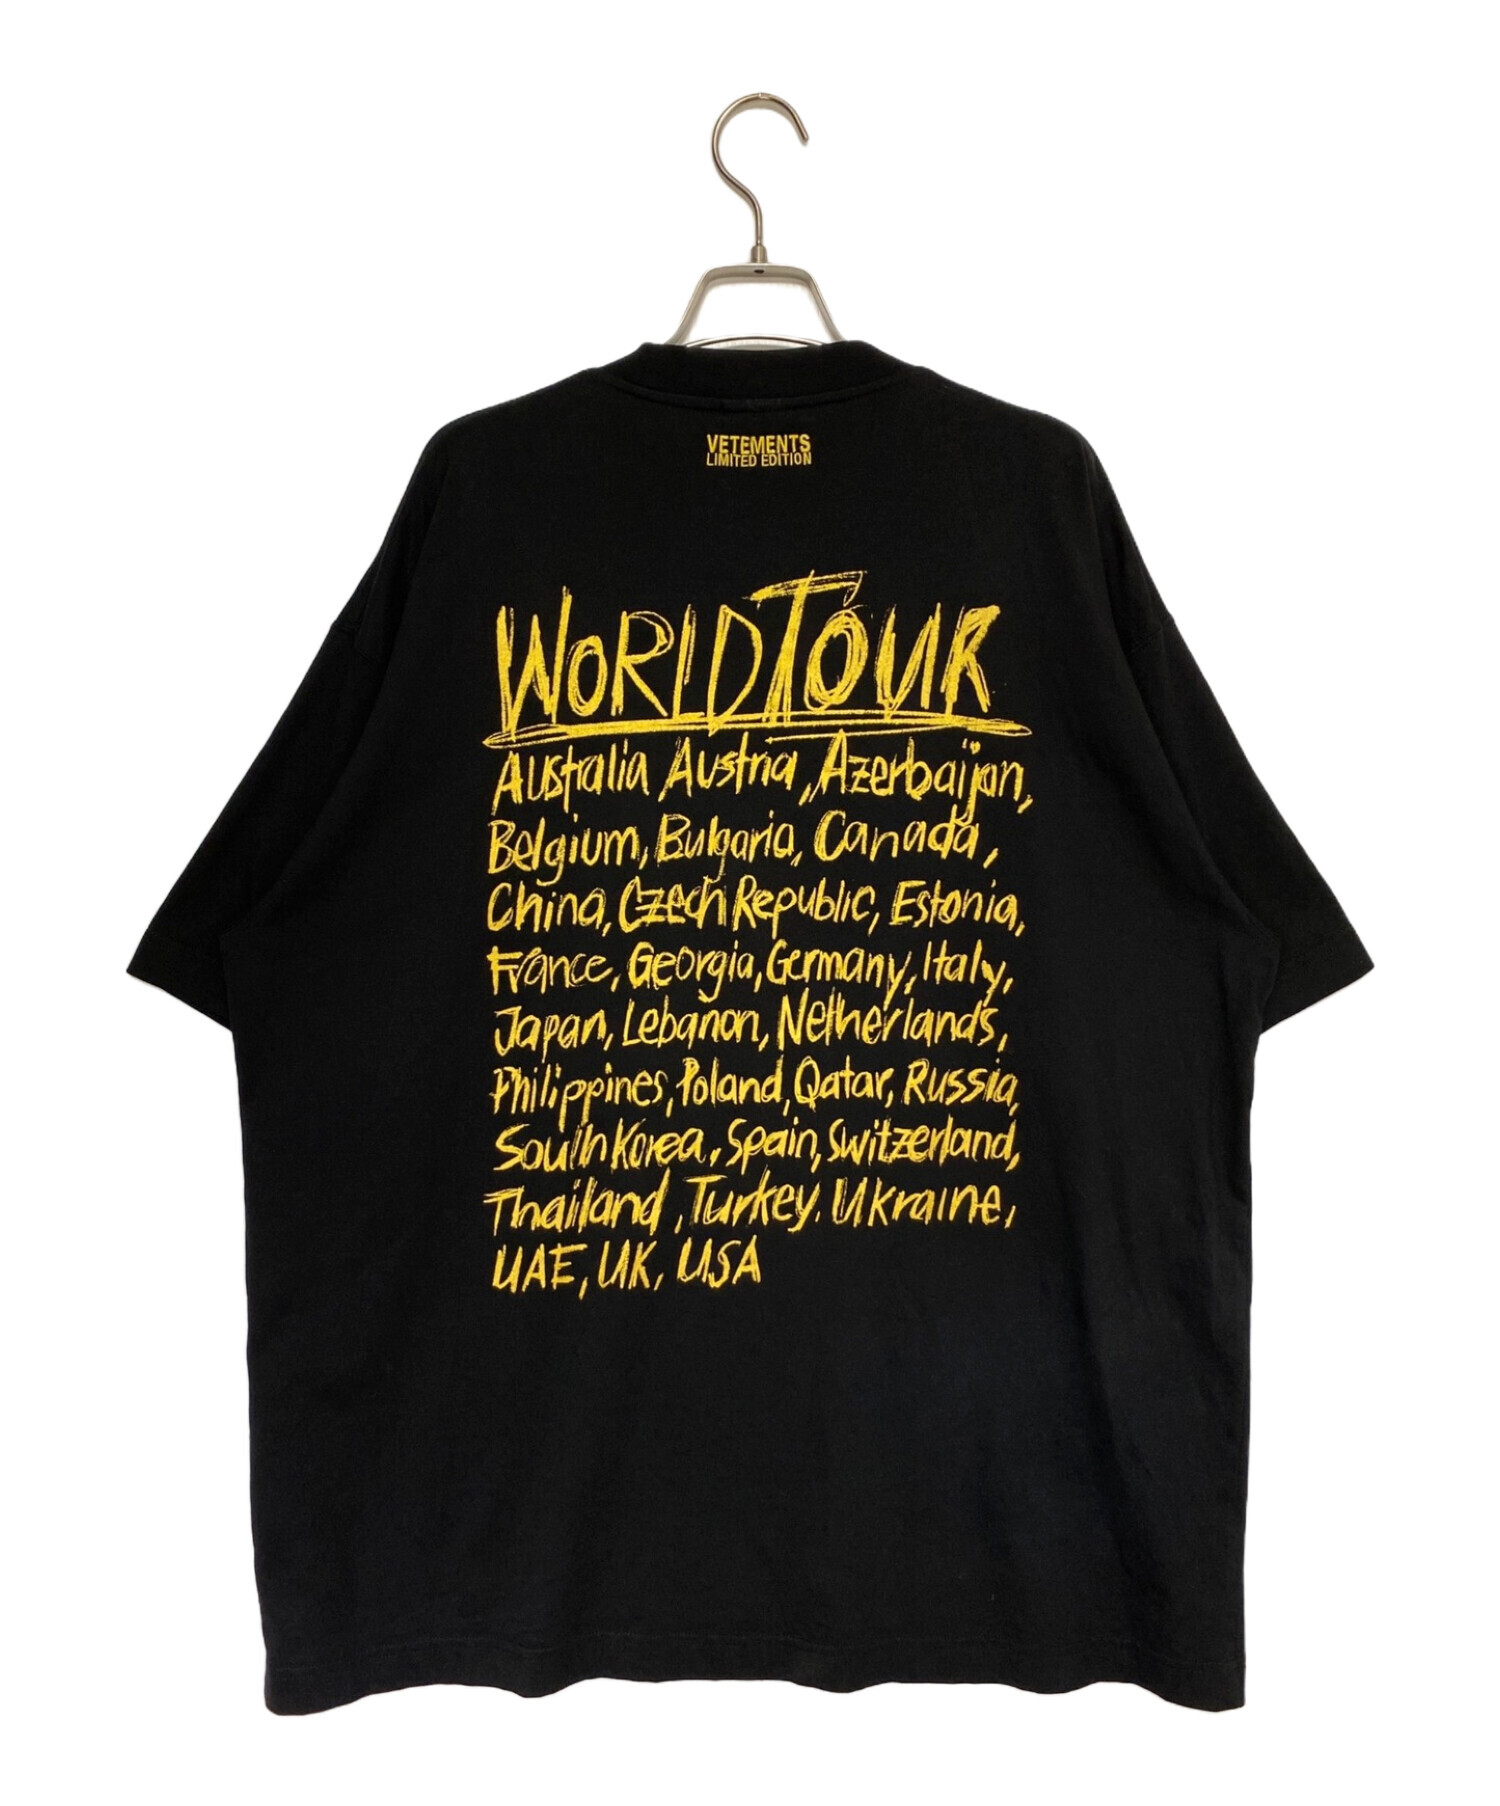 VETEMENTS (ヴェトモン) ワールドツアーロゴプリントTシャツ ブラック サイズ:XS